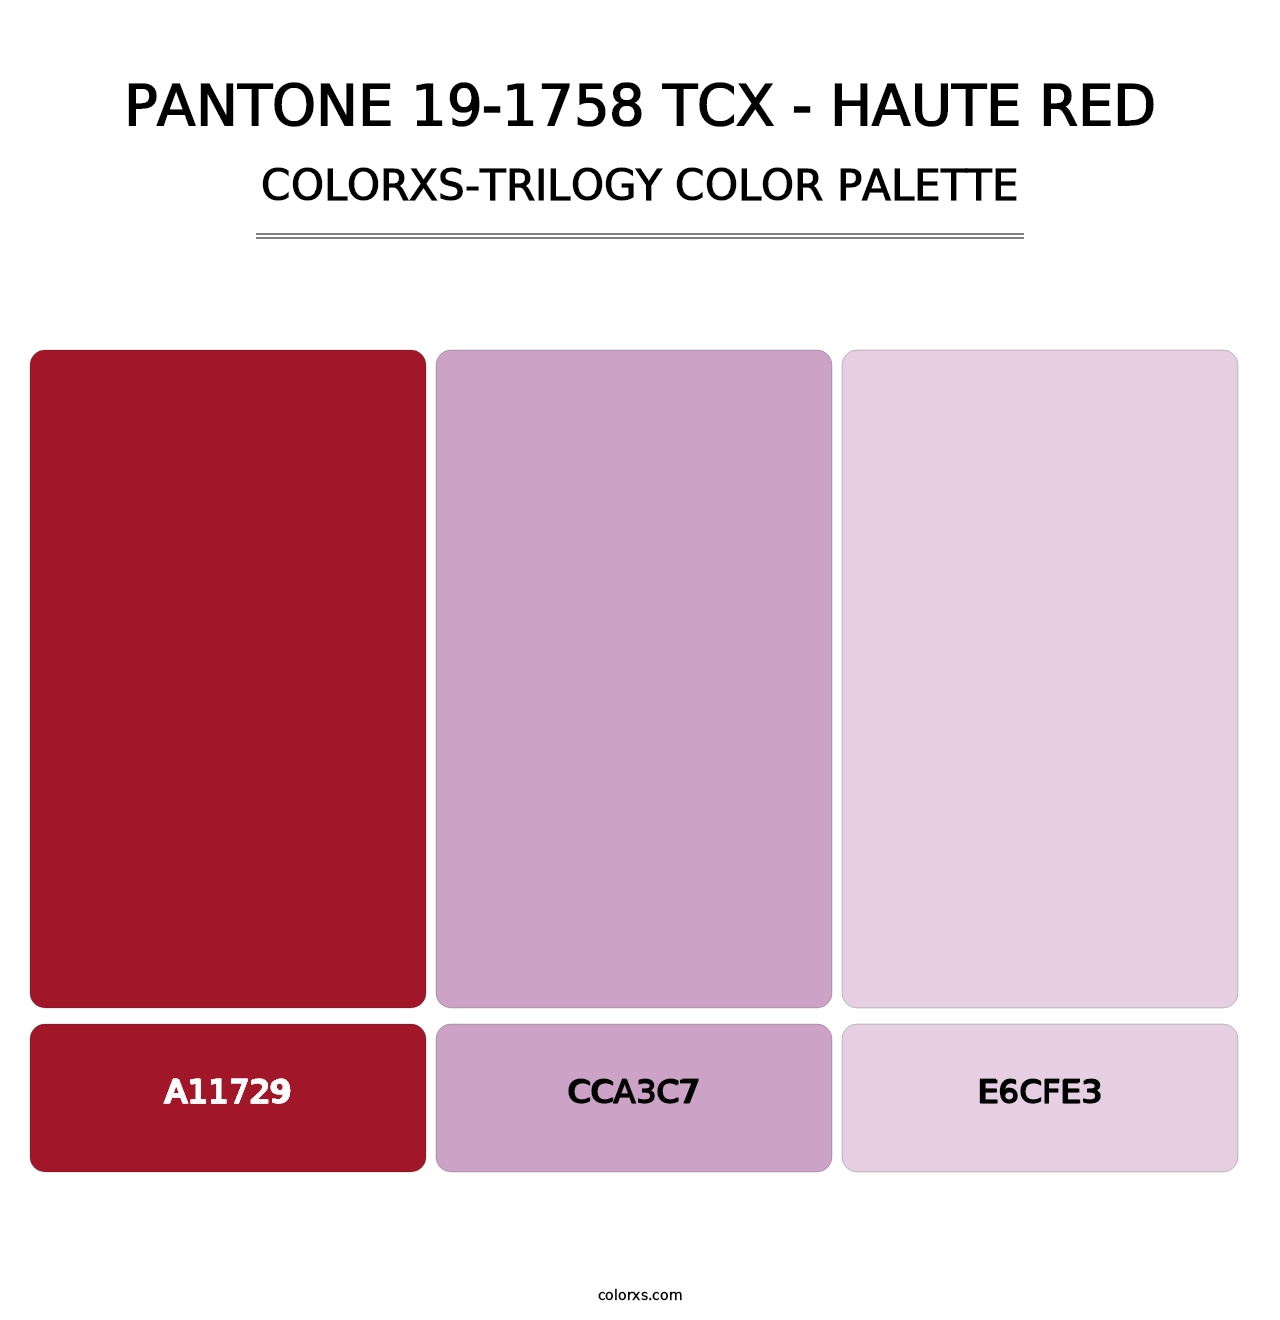 PANTONE 19-1758 TCX - Haute Red - Colorxs Trilogy Palette